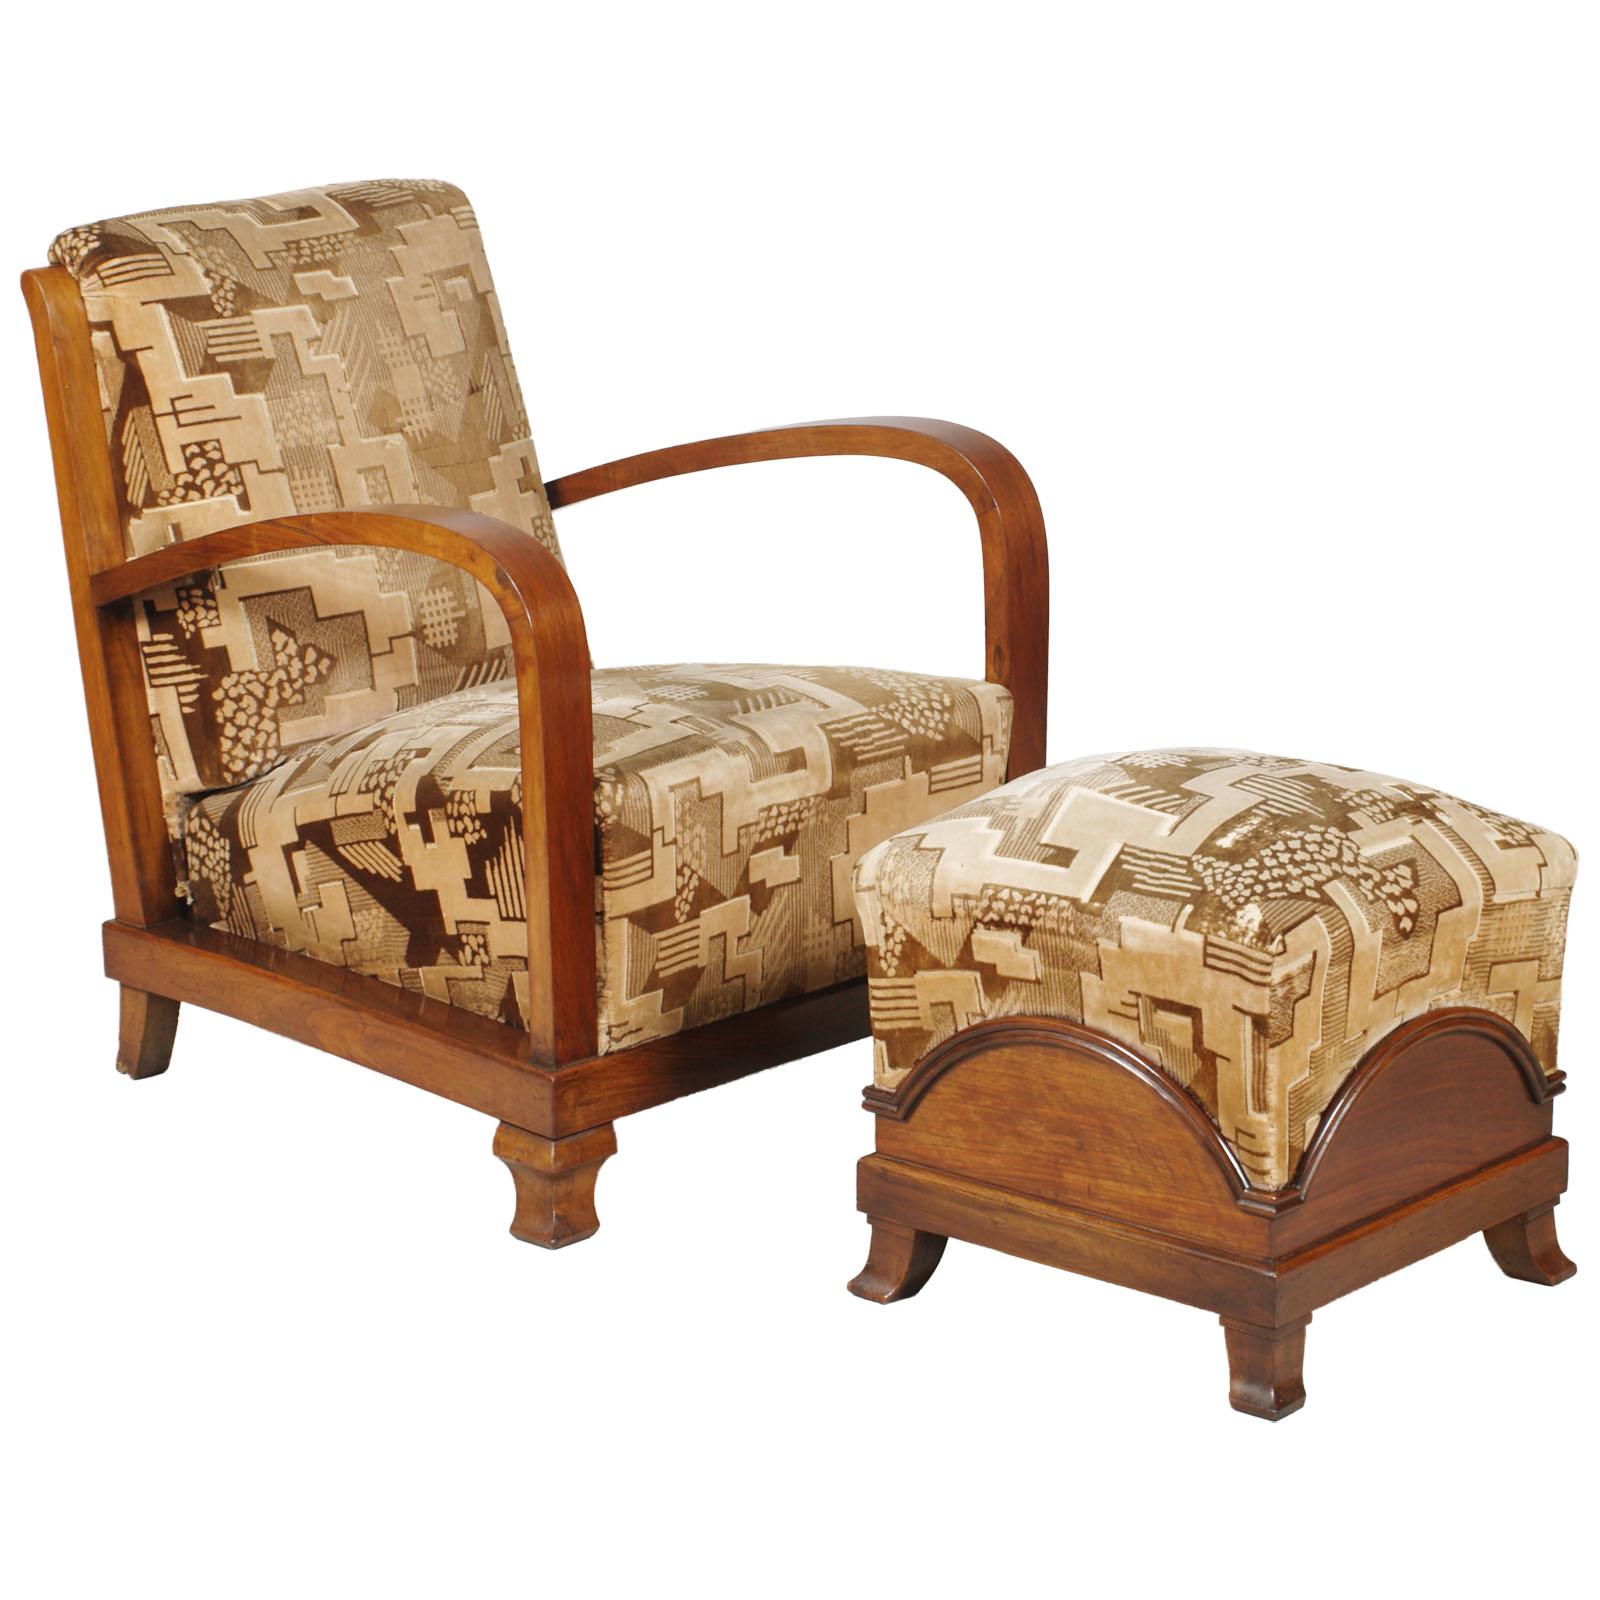 Exceptionnelle paire de fauteuils, tous d'origine futuriste, avec repose-pieds, de style Fortunato Depero des années 1920, dont la tapisserie originale en velours futuriste est encore utilisable.
Étant donné que les sièges ont été retrouvés dans la